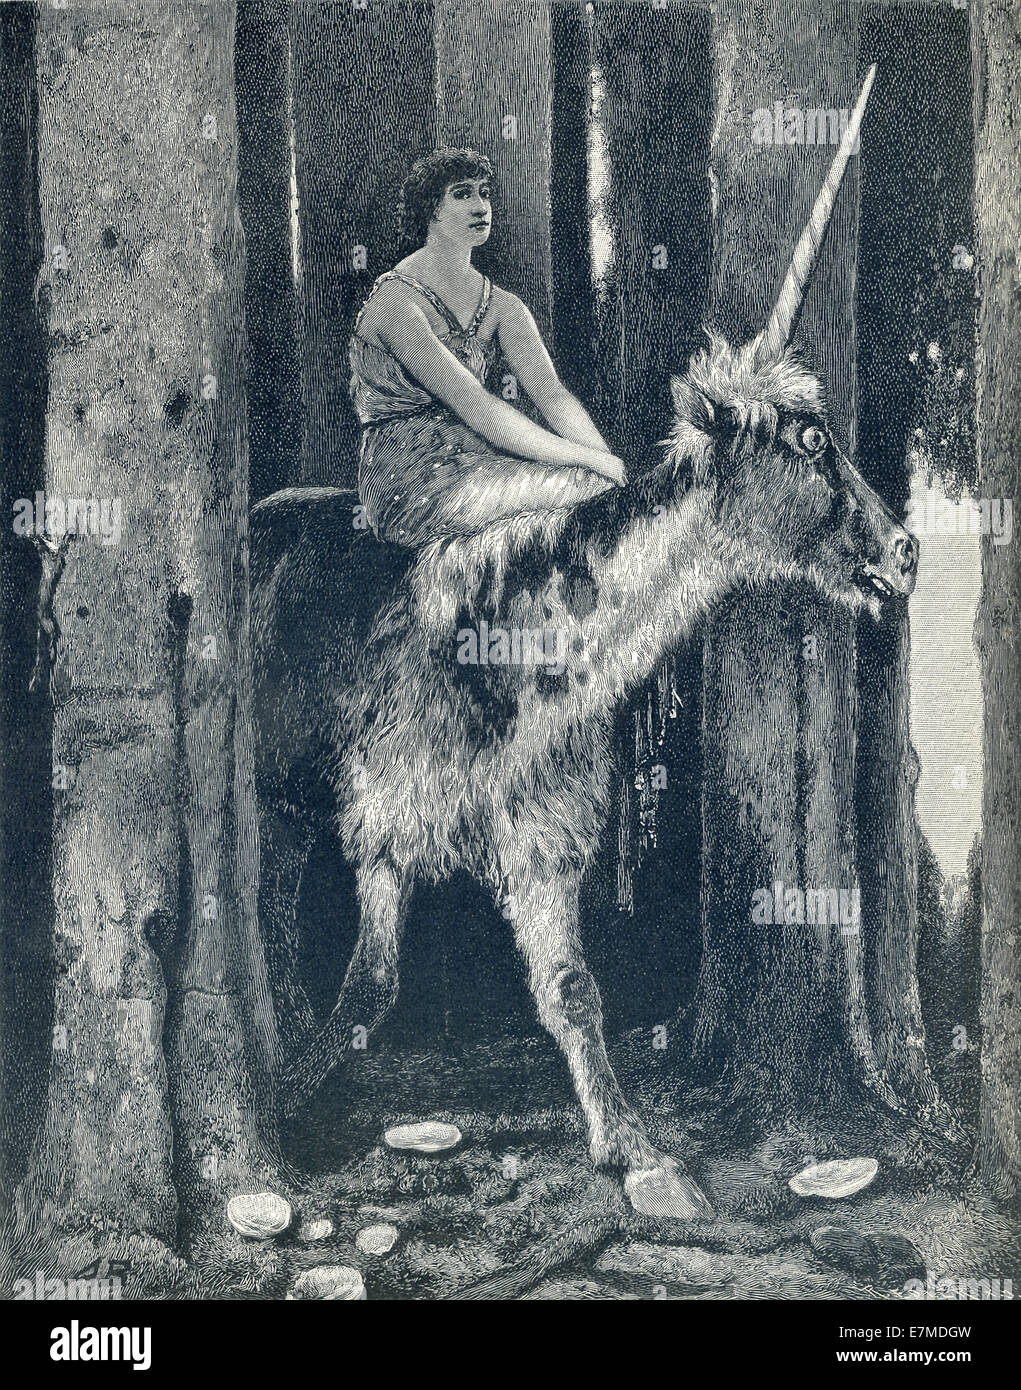 Questa illustrazione di Arnold Bocklin mostra un unicorno, con una fanciulla equitazione sulla sua schiena. Bocklin (1827-1901) era un simbolista svizzero Foto Stock